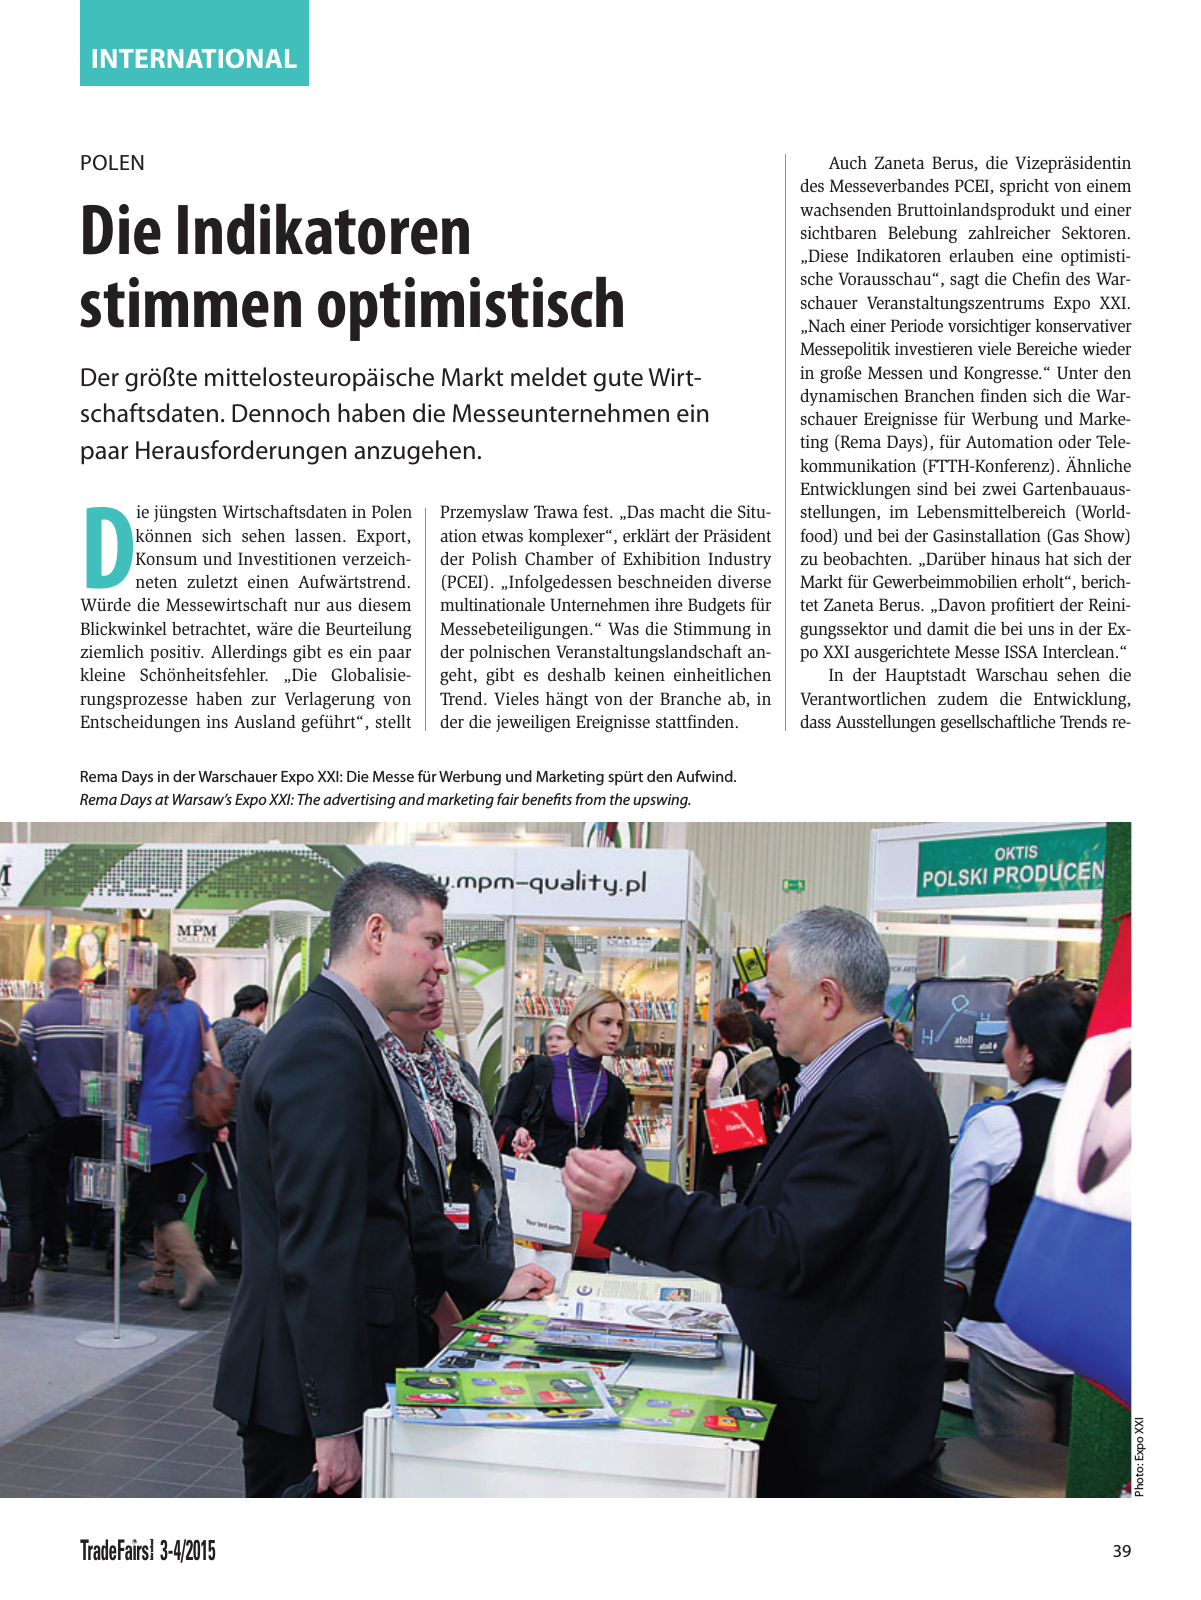 Vorschau TFI Trade-Fairs-International 03-04/2015 Seite 39